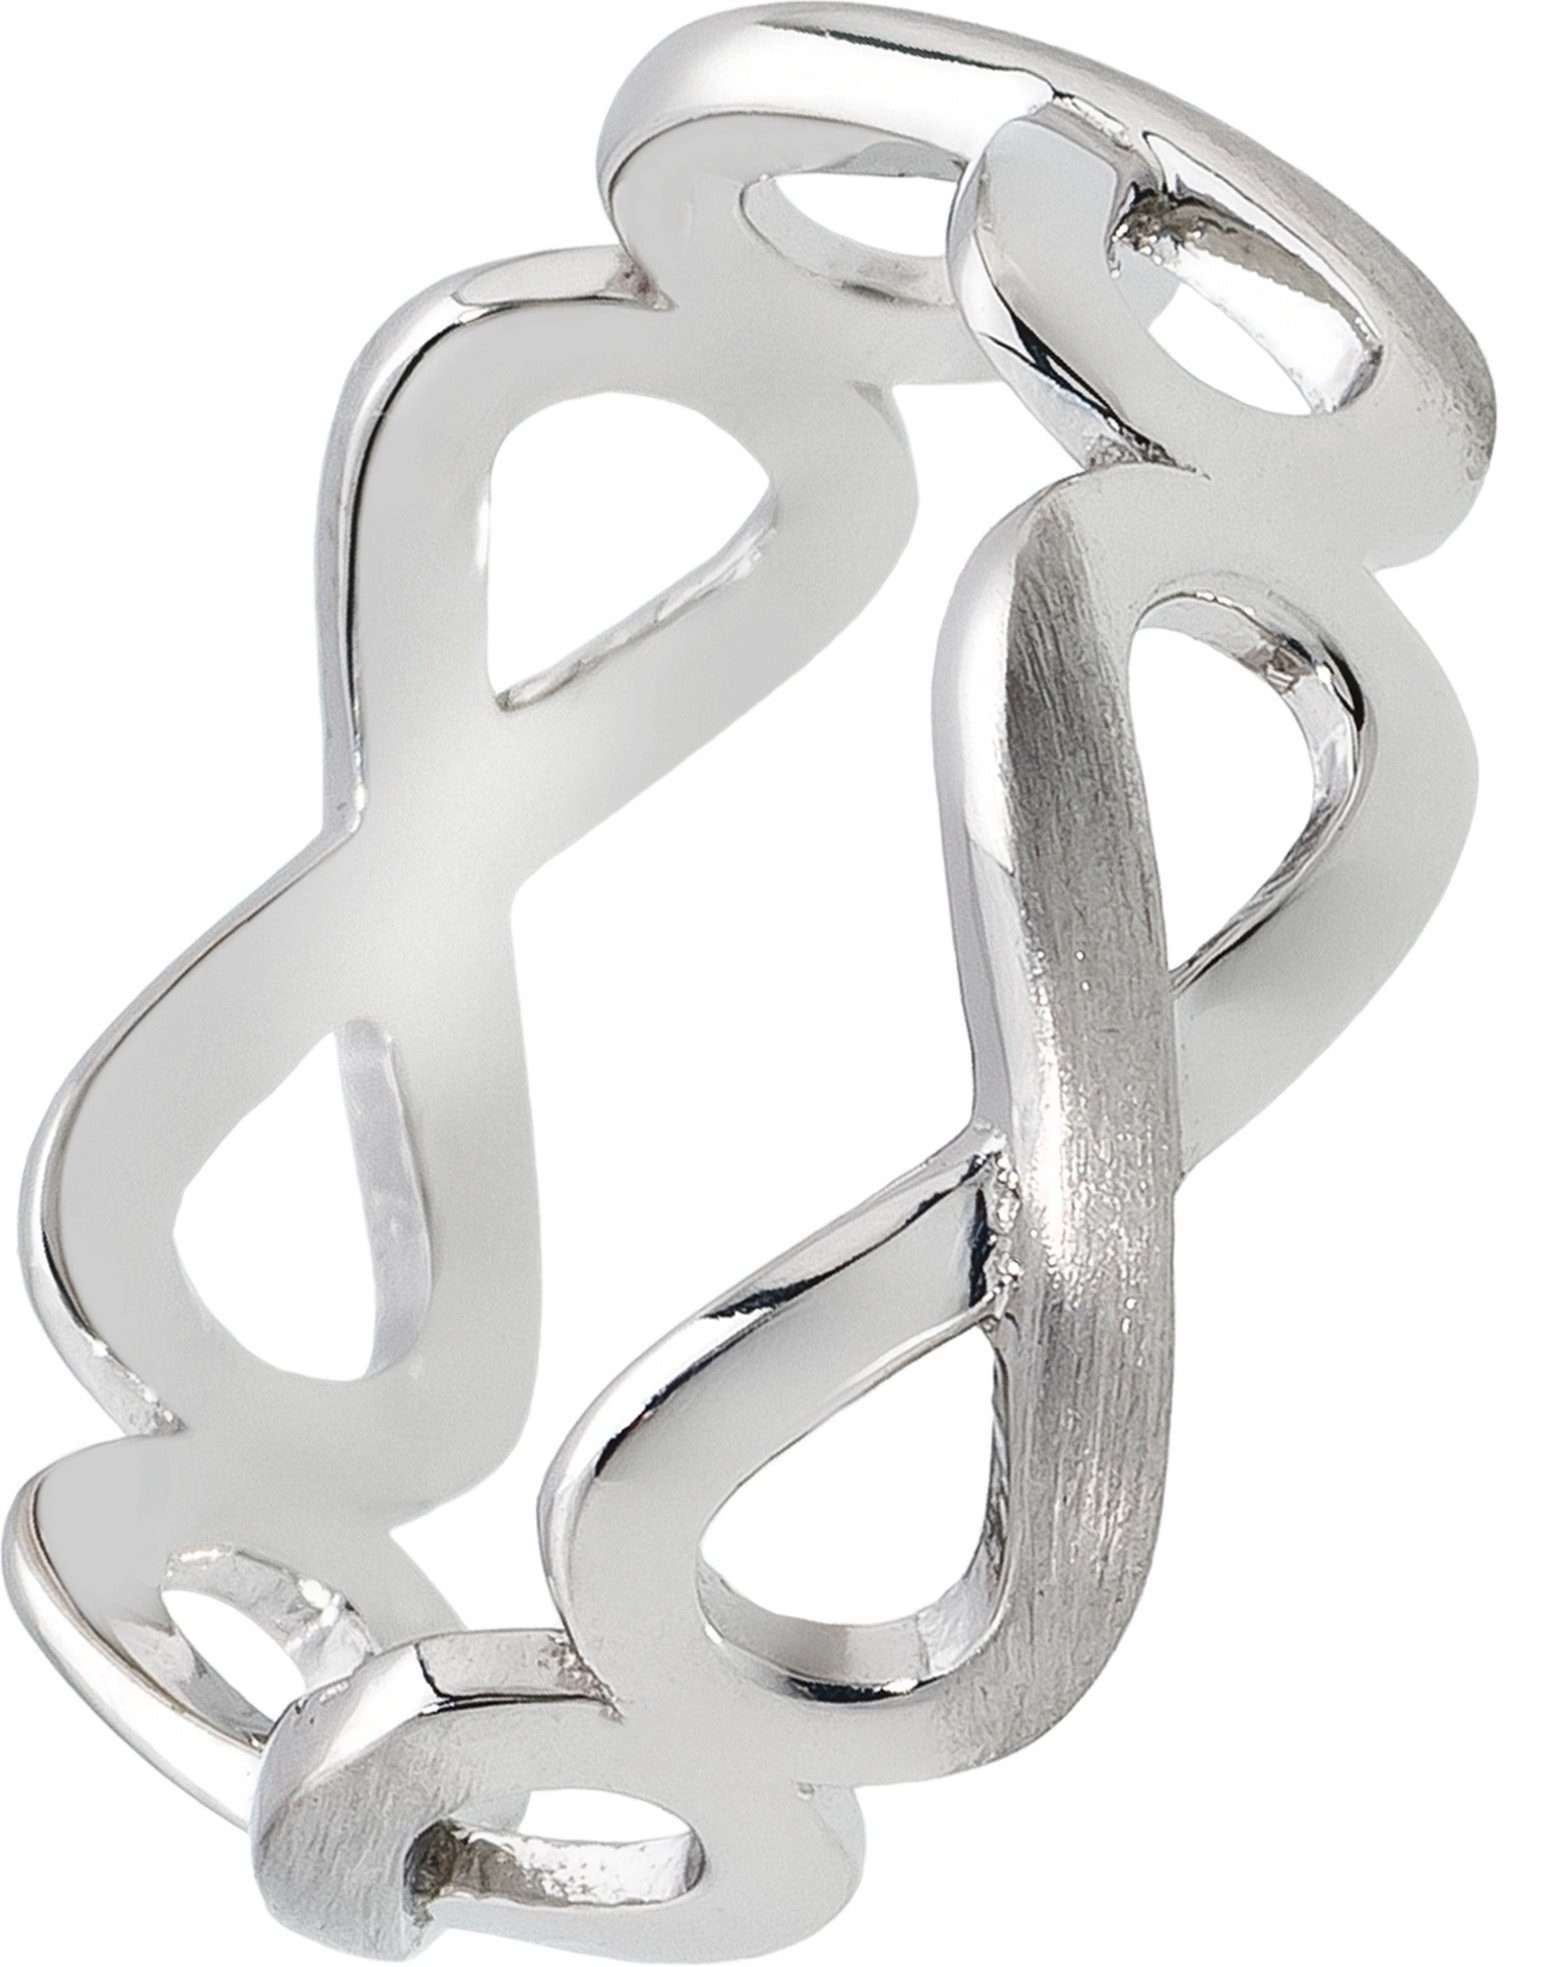 Balia Silberring Balia Ring für Damen Silber 925 (Fingerring), Damen Ring Unendlichkeit, 60 (19,1), 925 Sterling Silber